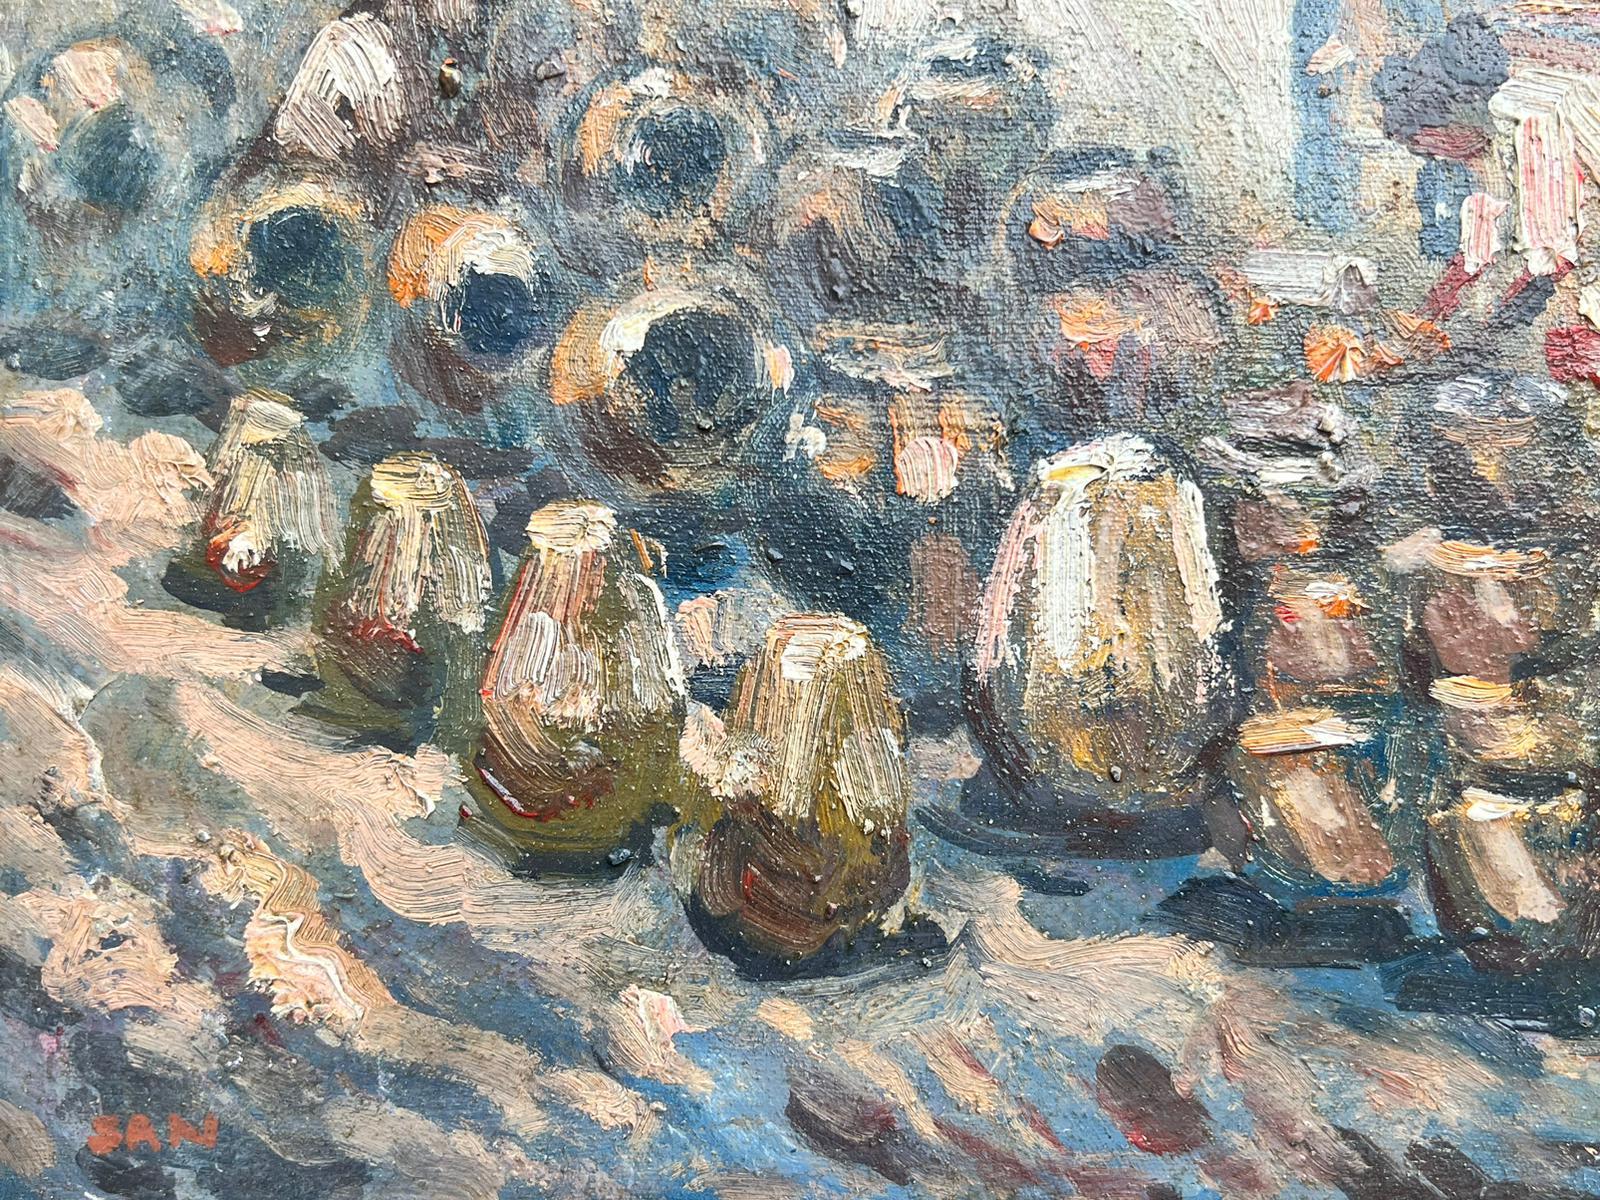 Pot à huile impressionniste français du milieu du 20e siècle Vendeur au marché - Painting de French School 